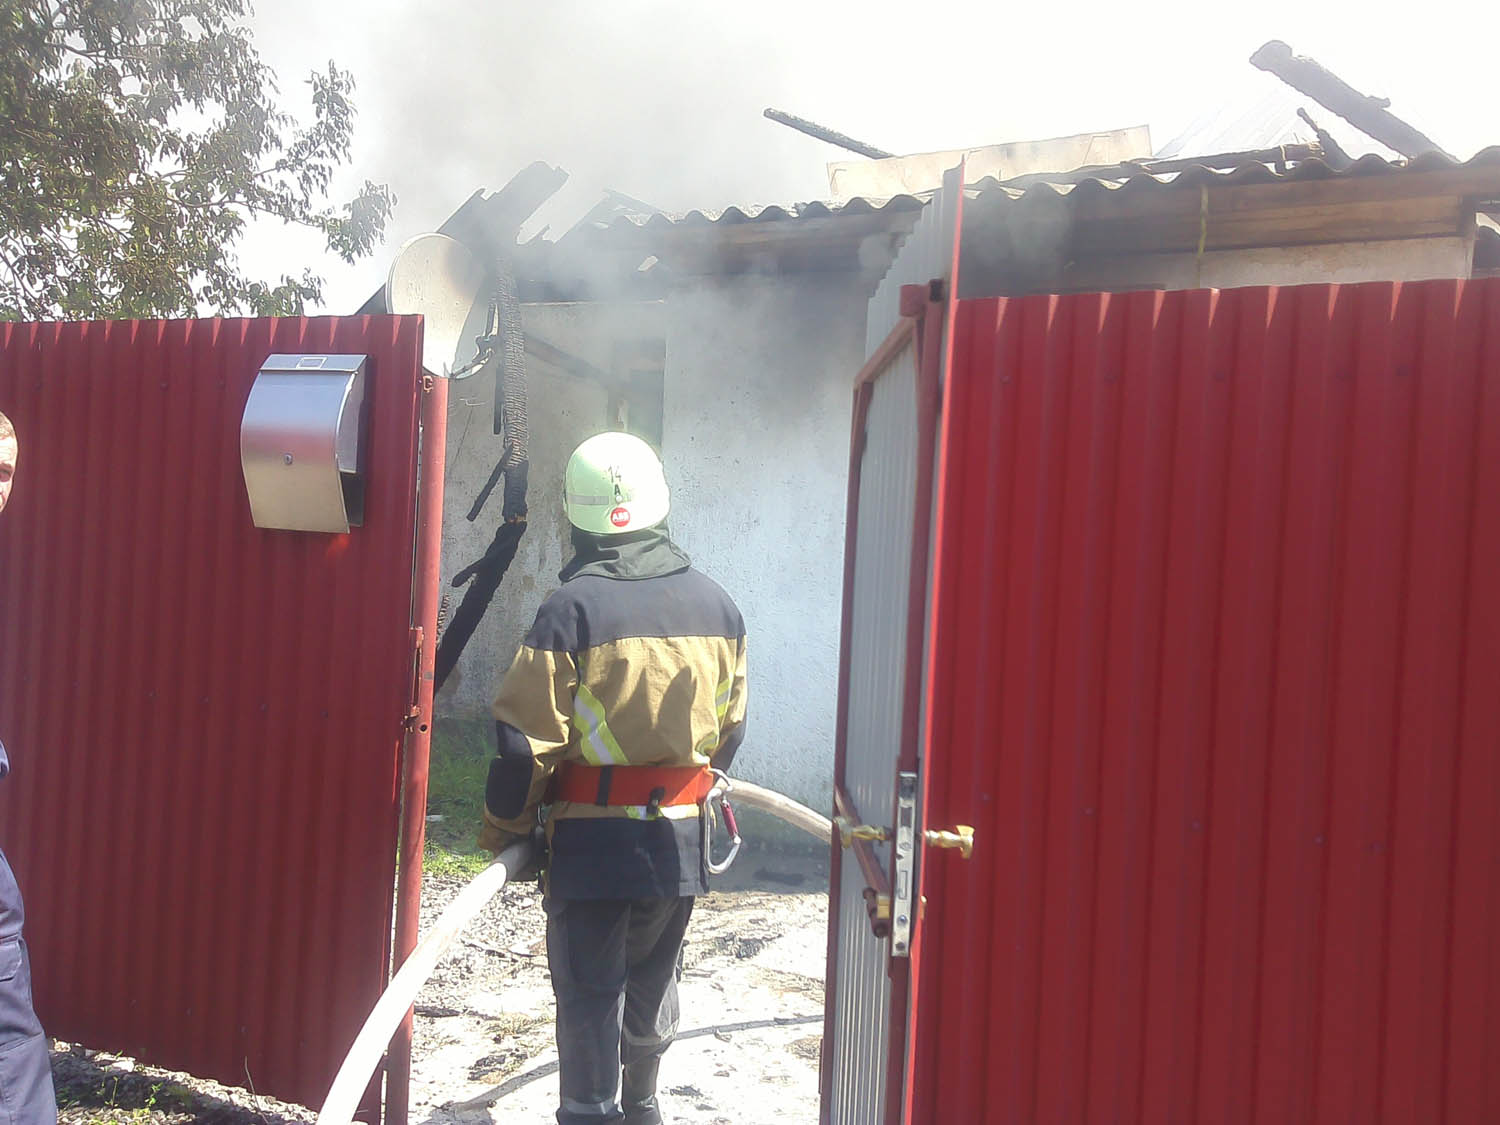 19 мая в 12:40 в оперативно-спасательную службу поступило сообщение о пожаре, возникшем в частном жилом доме на вул. Свободы в селе Роговица Ужгородского района.